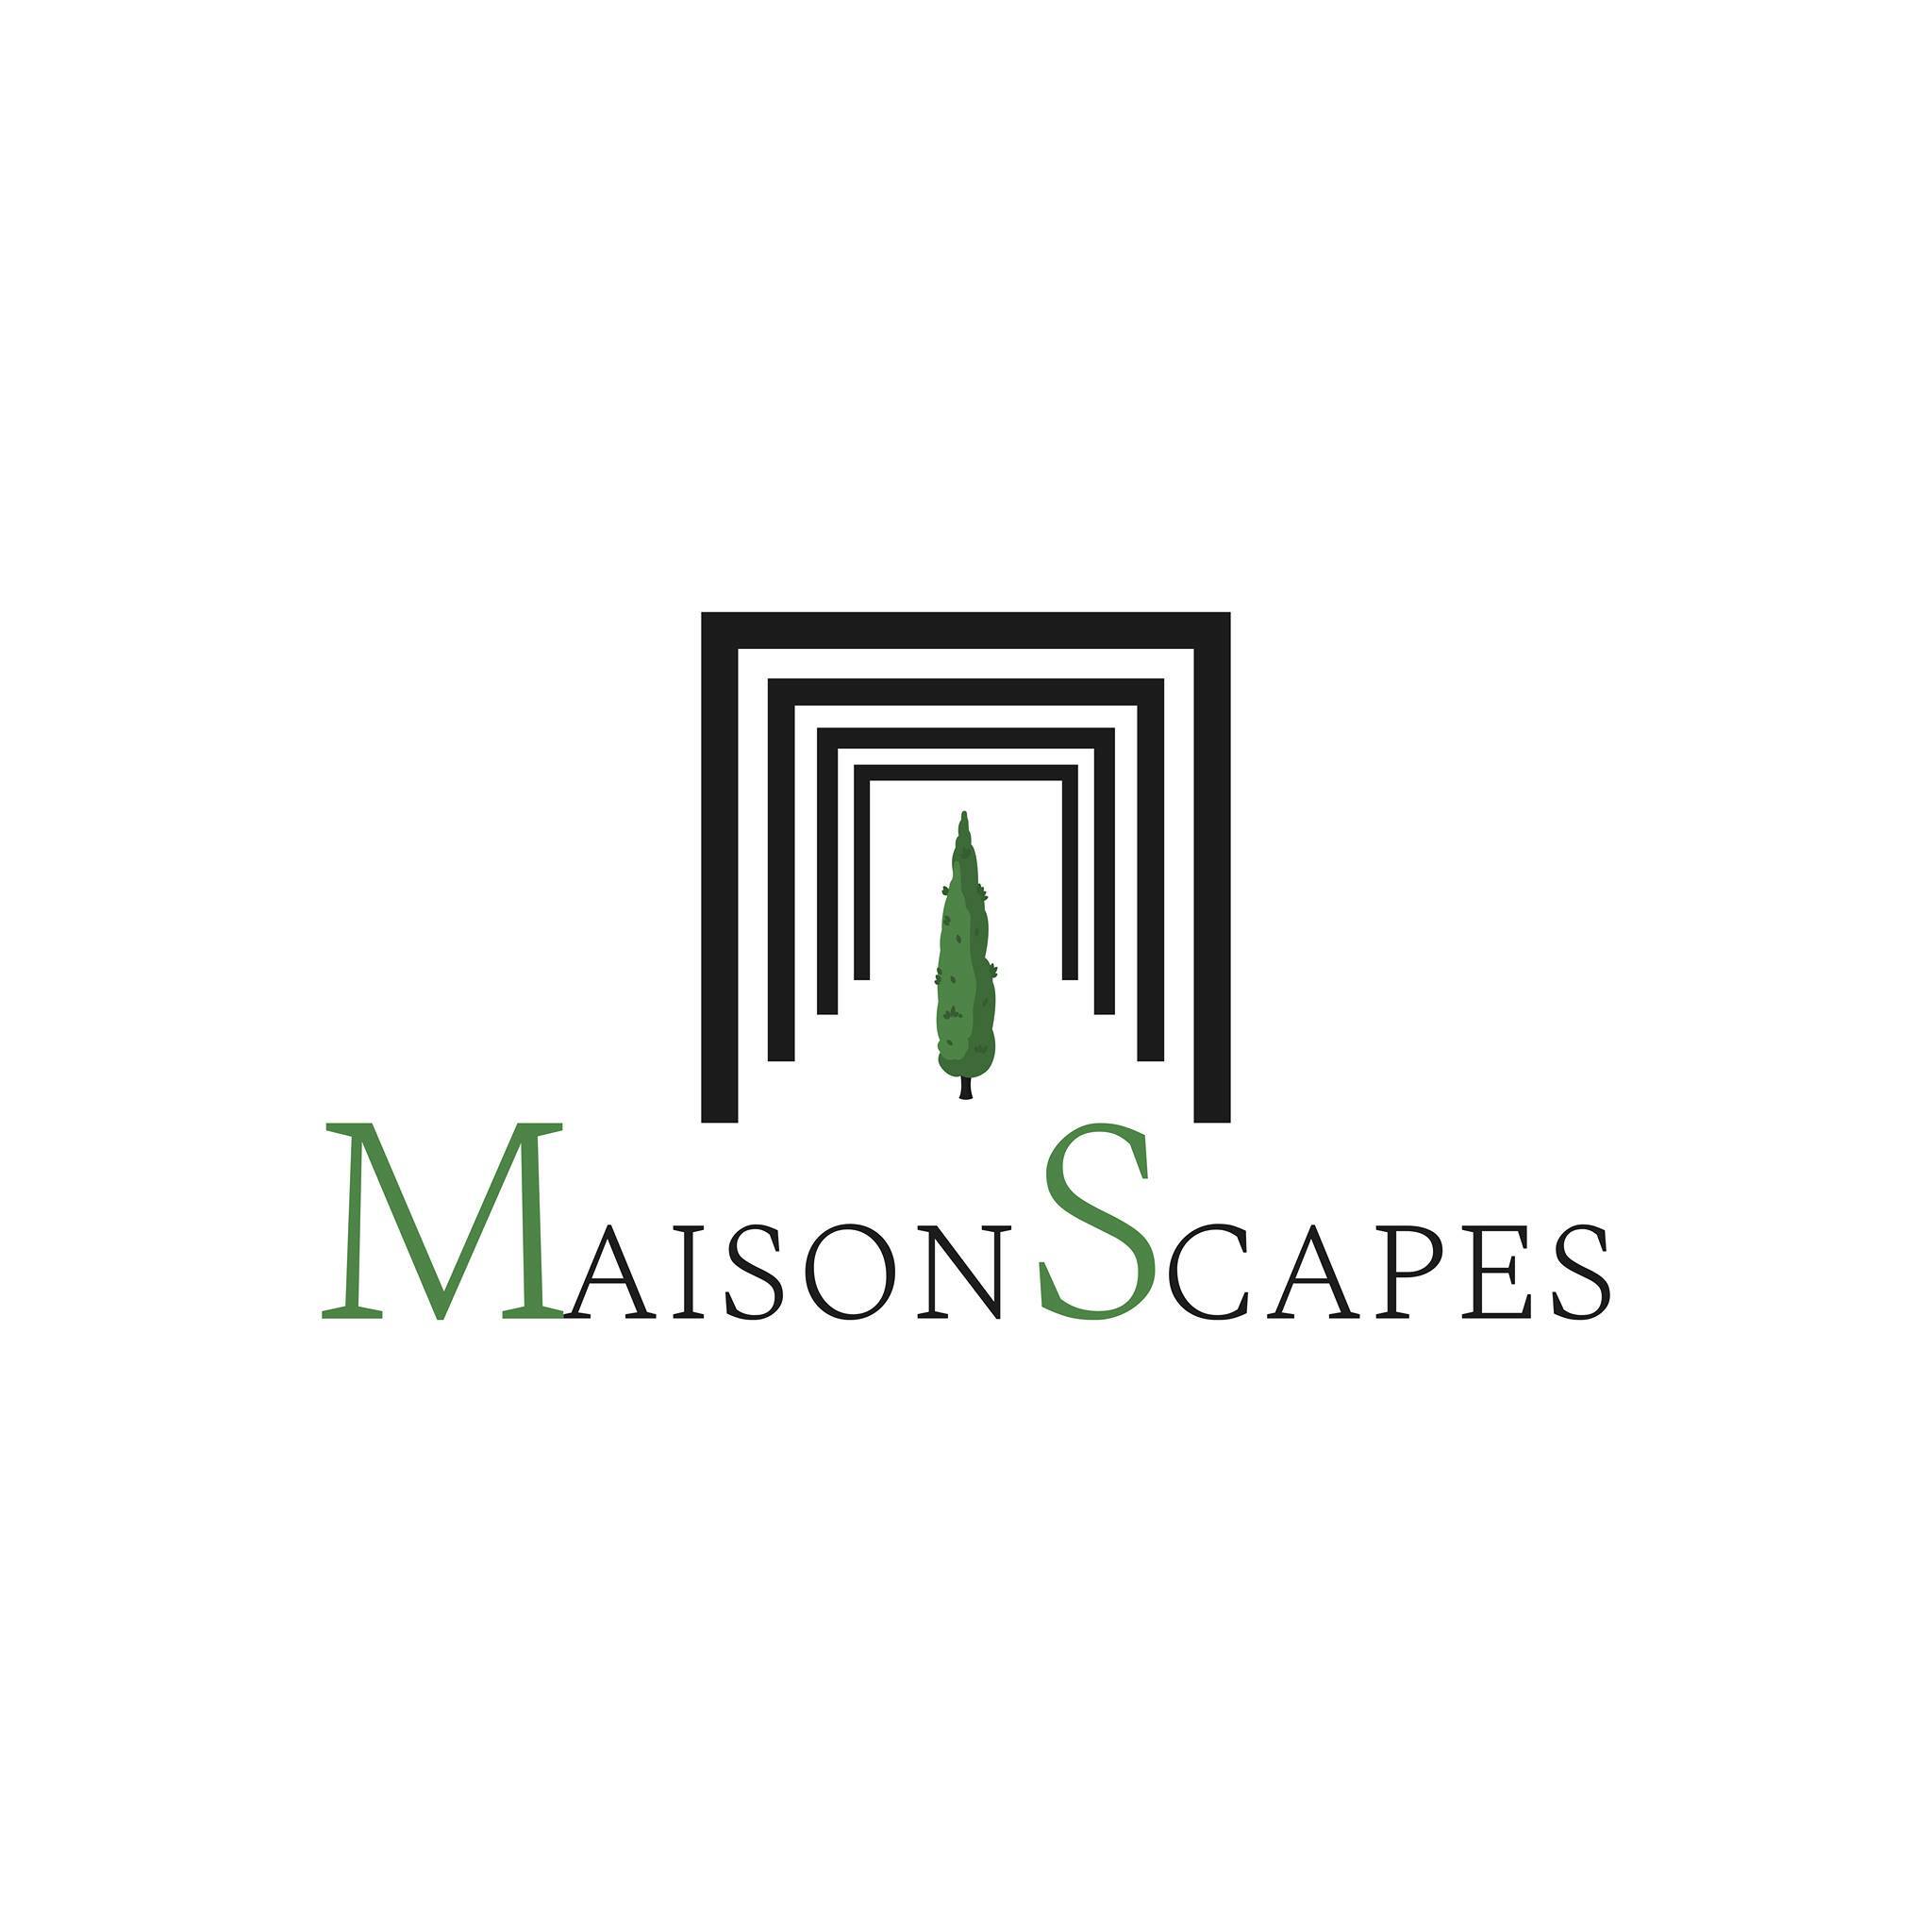 Maisonscapes's logo